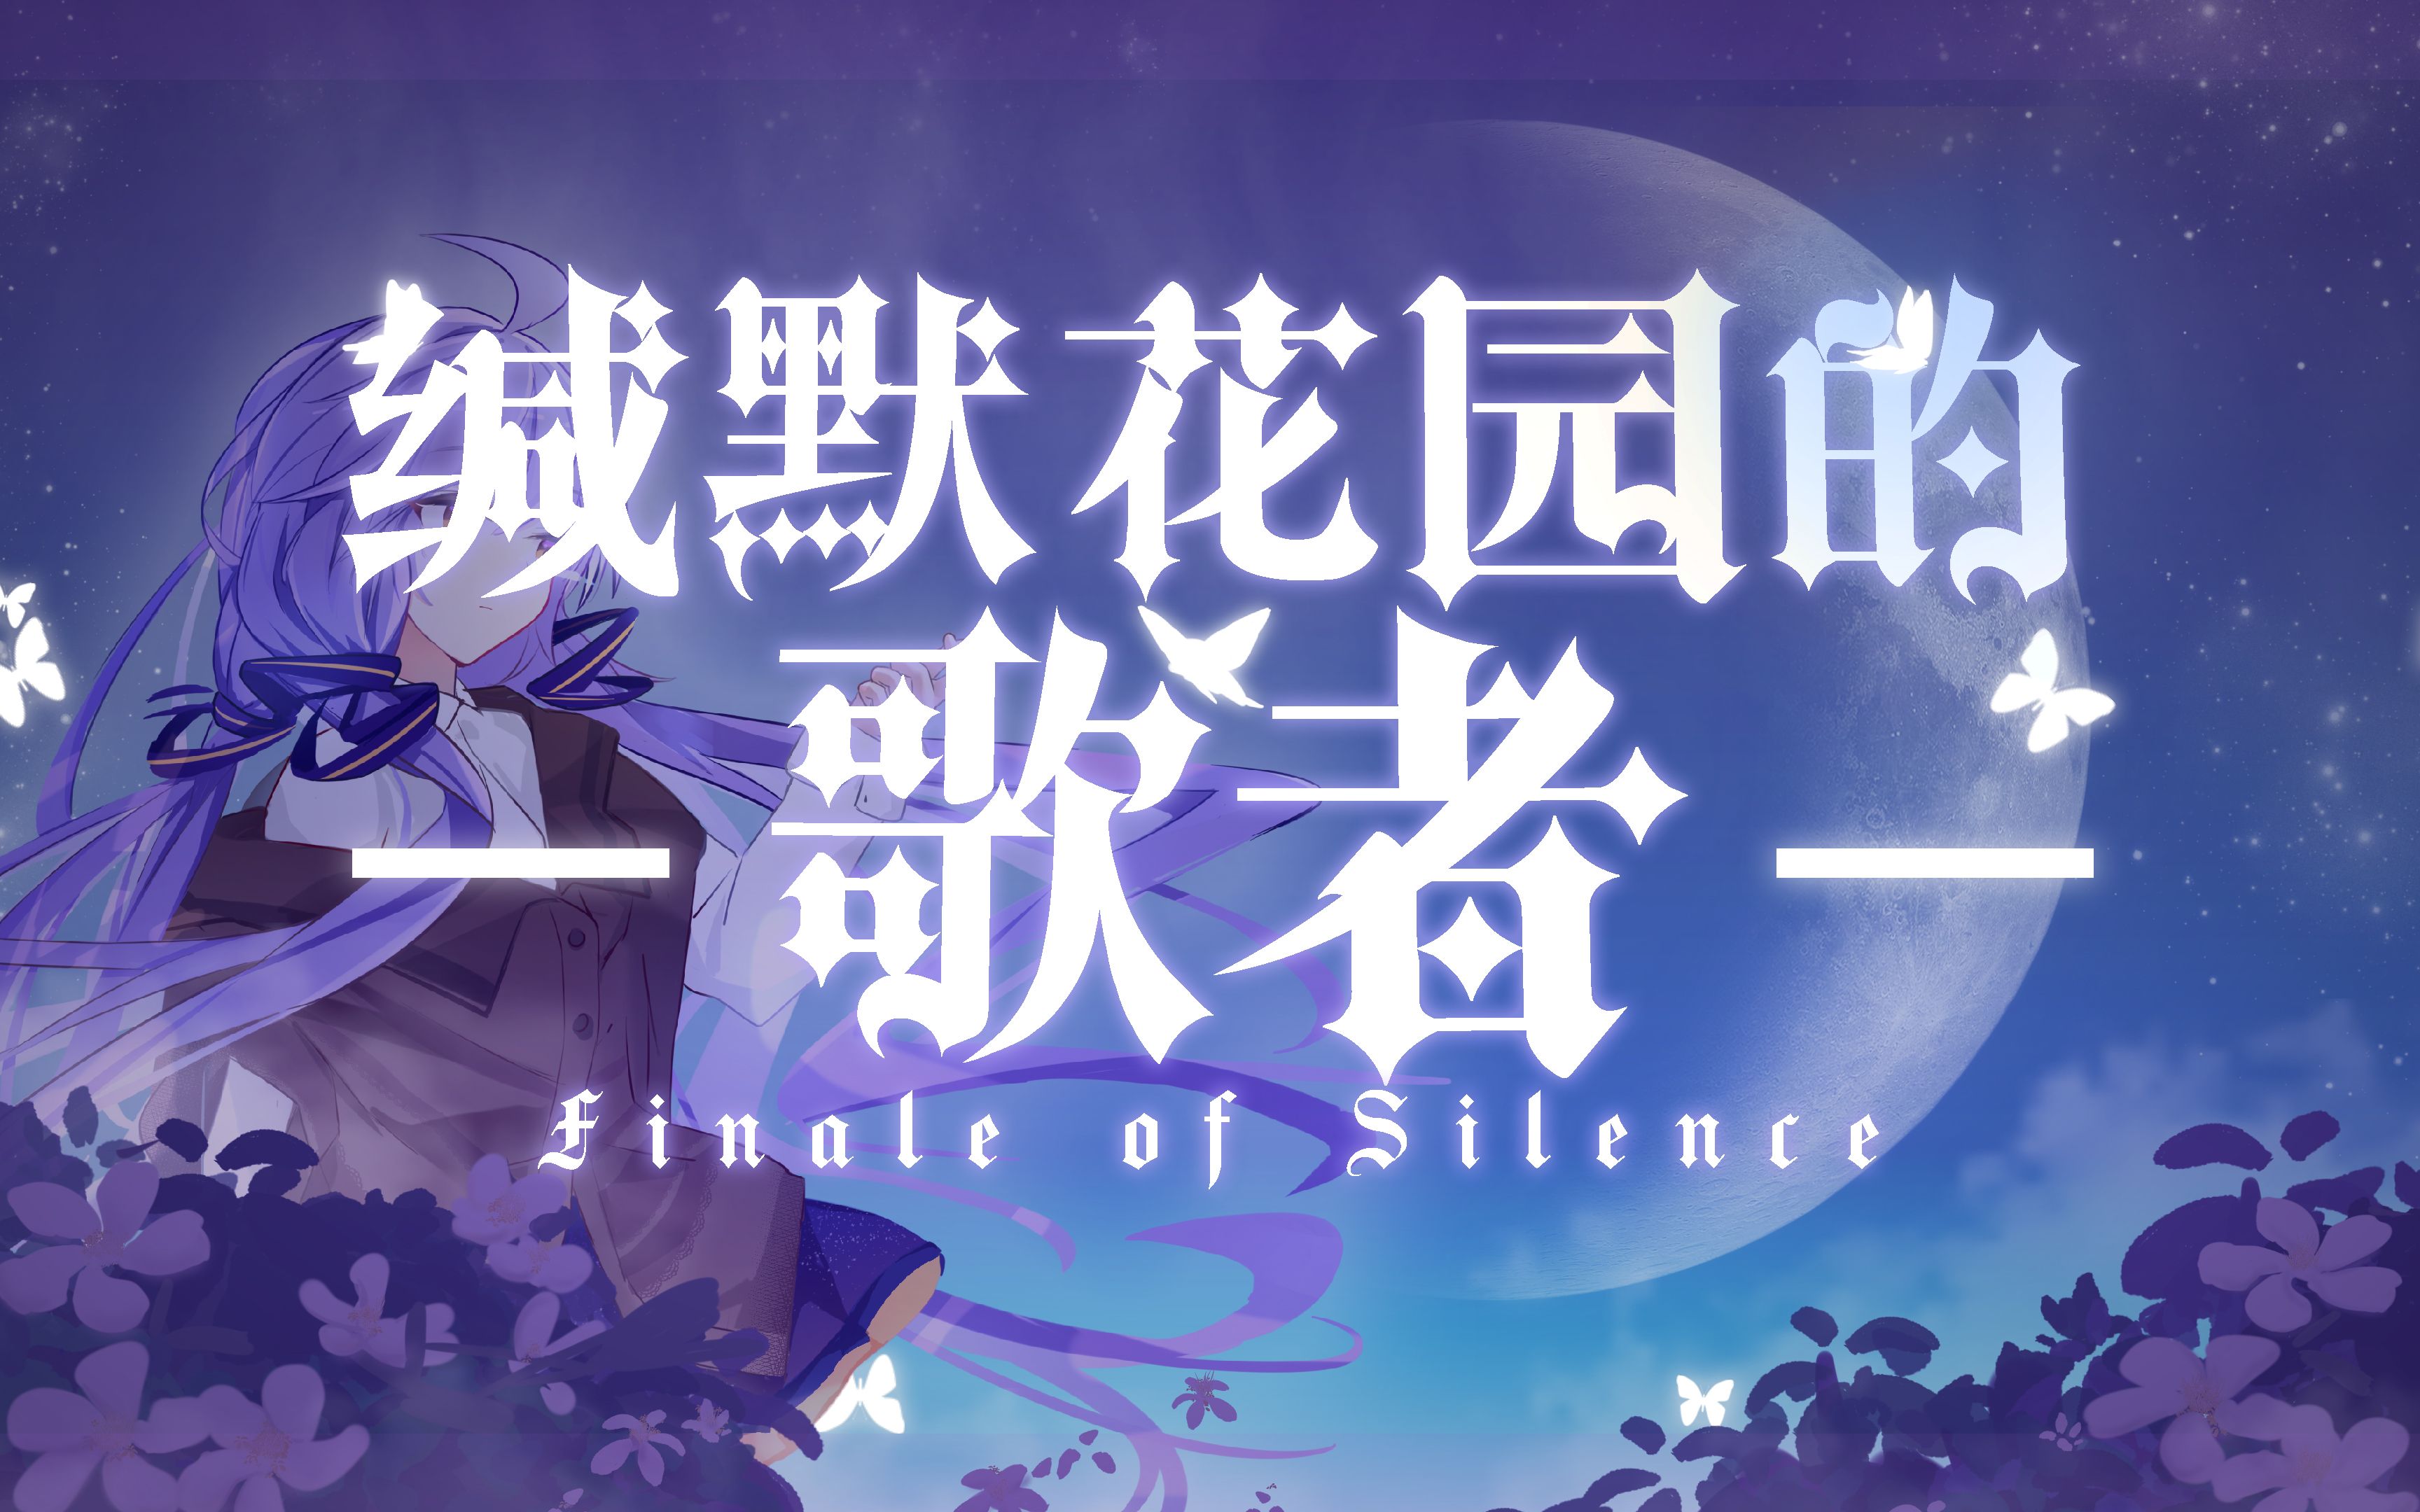 【星尘2023原创生贺曲】缄默花园的歌者~Finale of Silence【PV付】